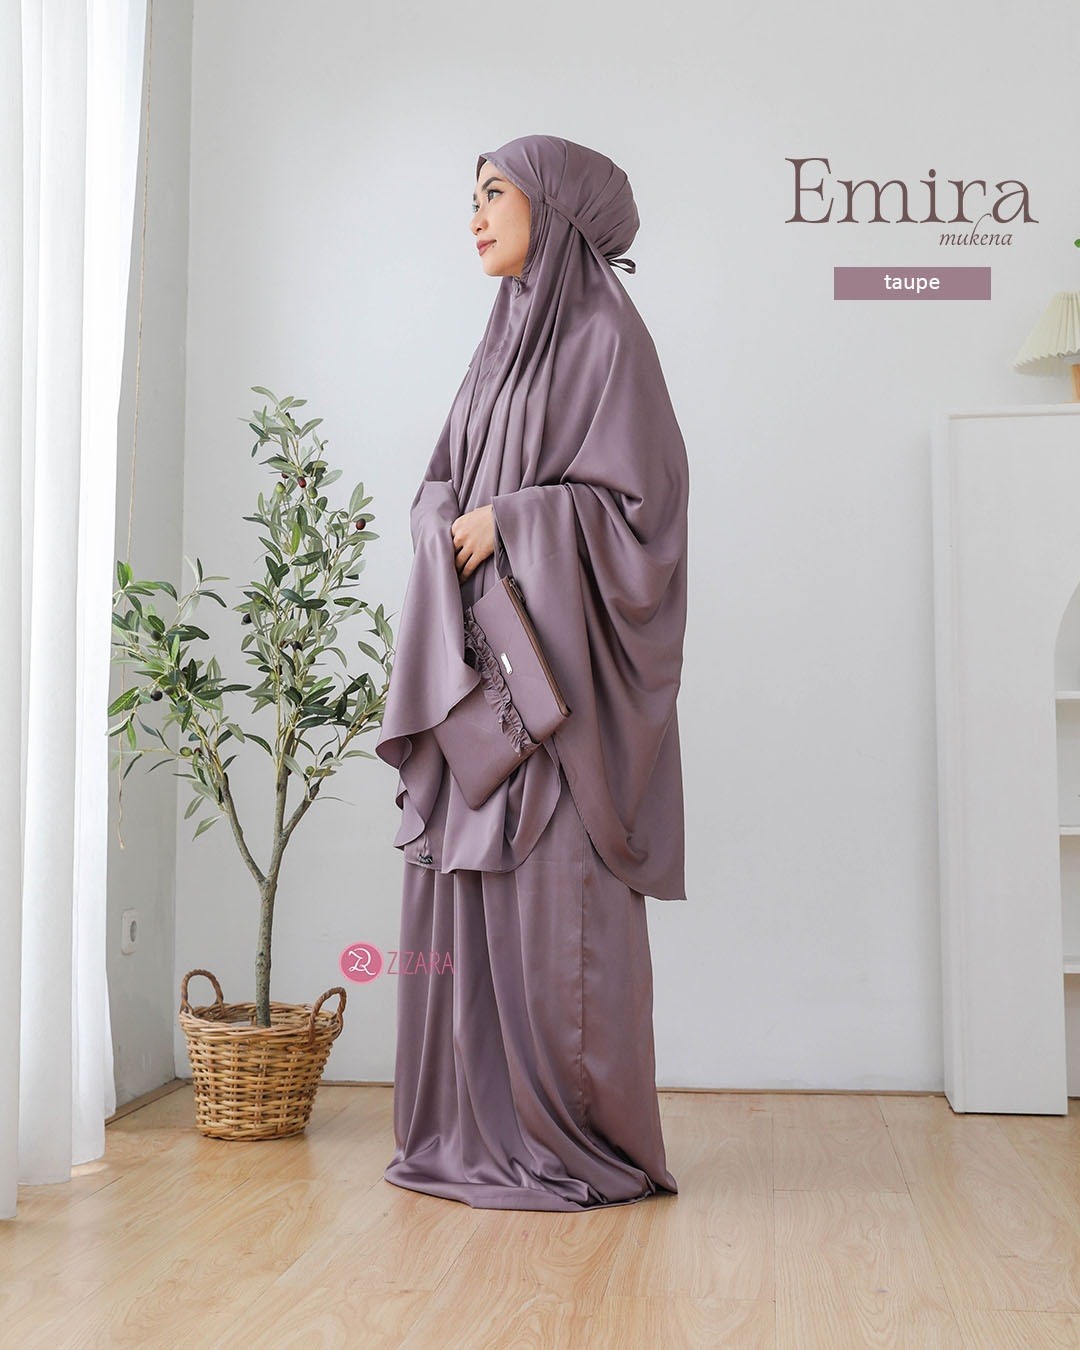 LINE_ALBUM_Emira, Elma_230219_40